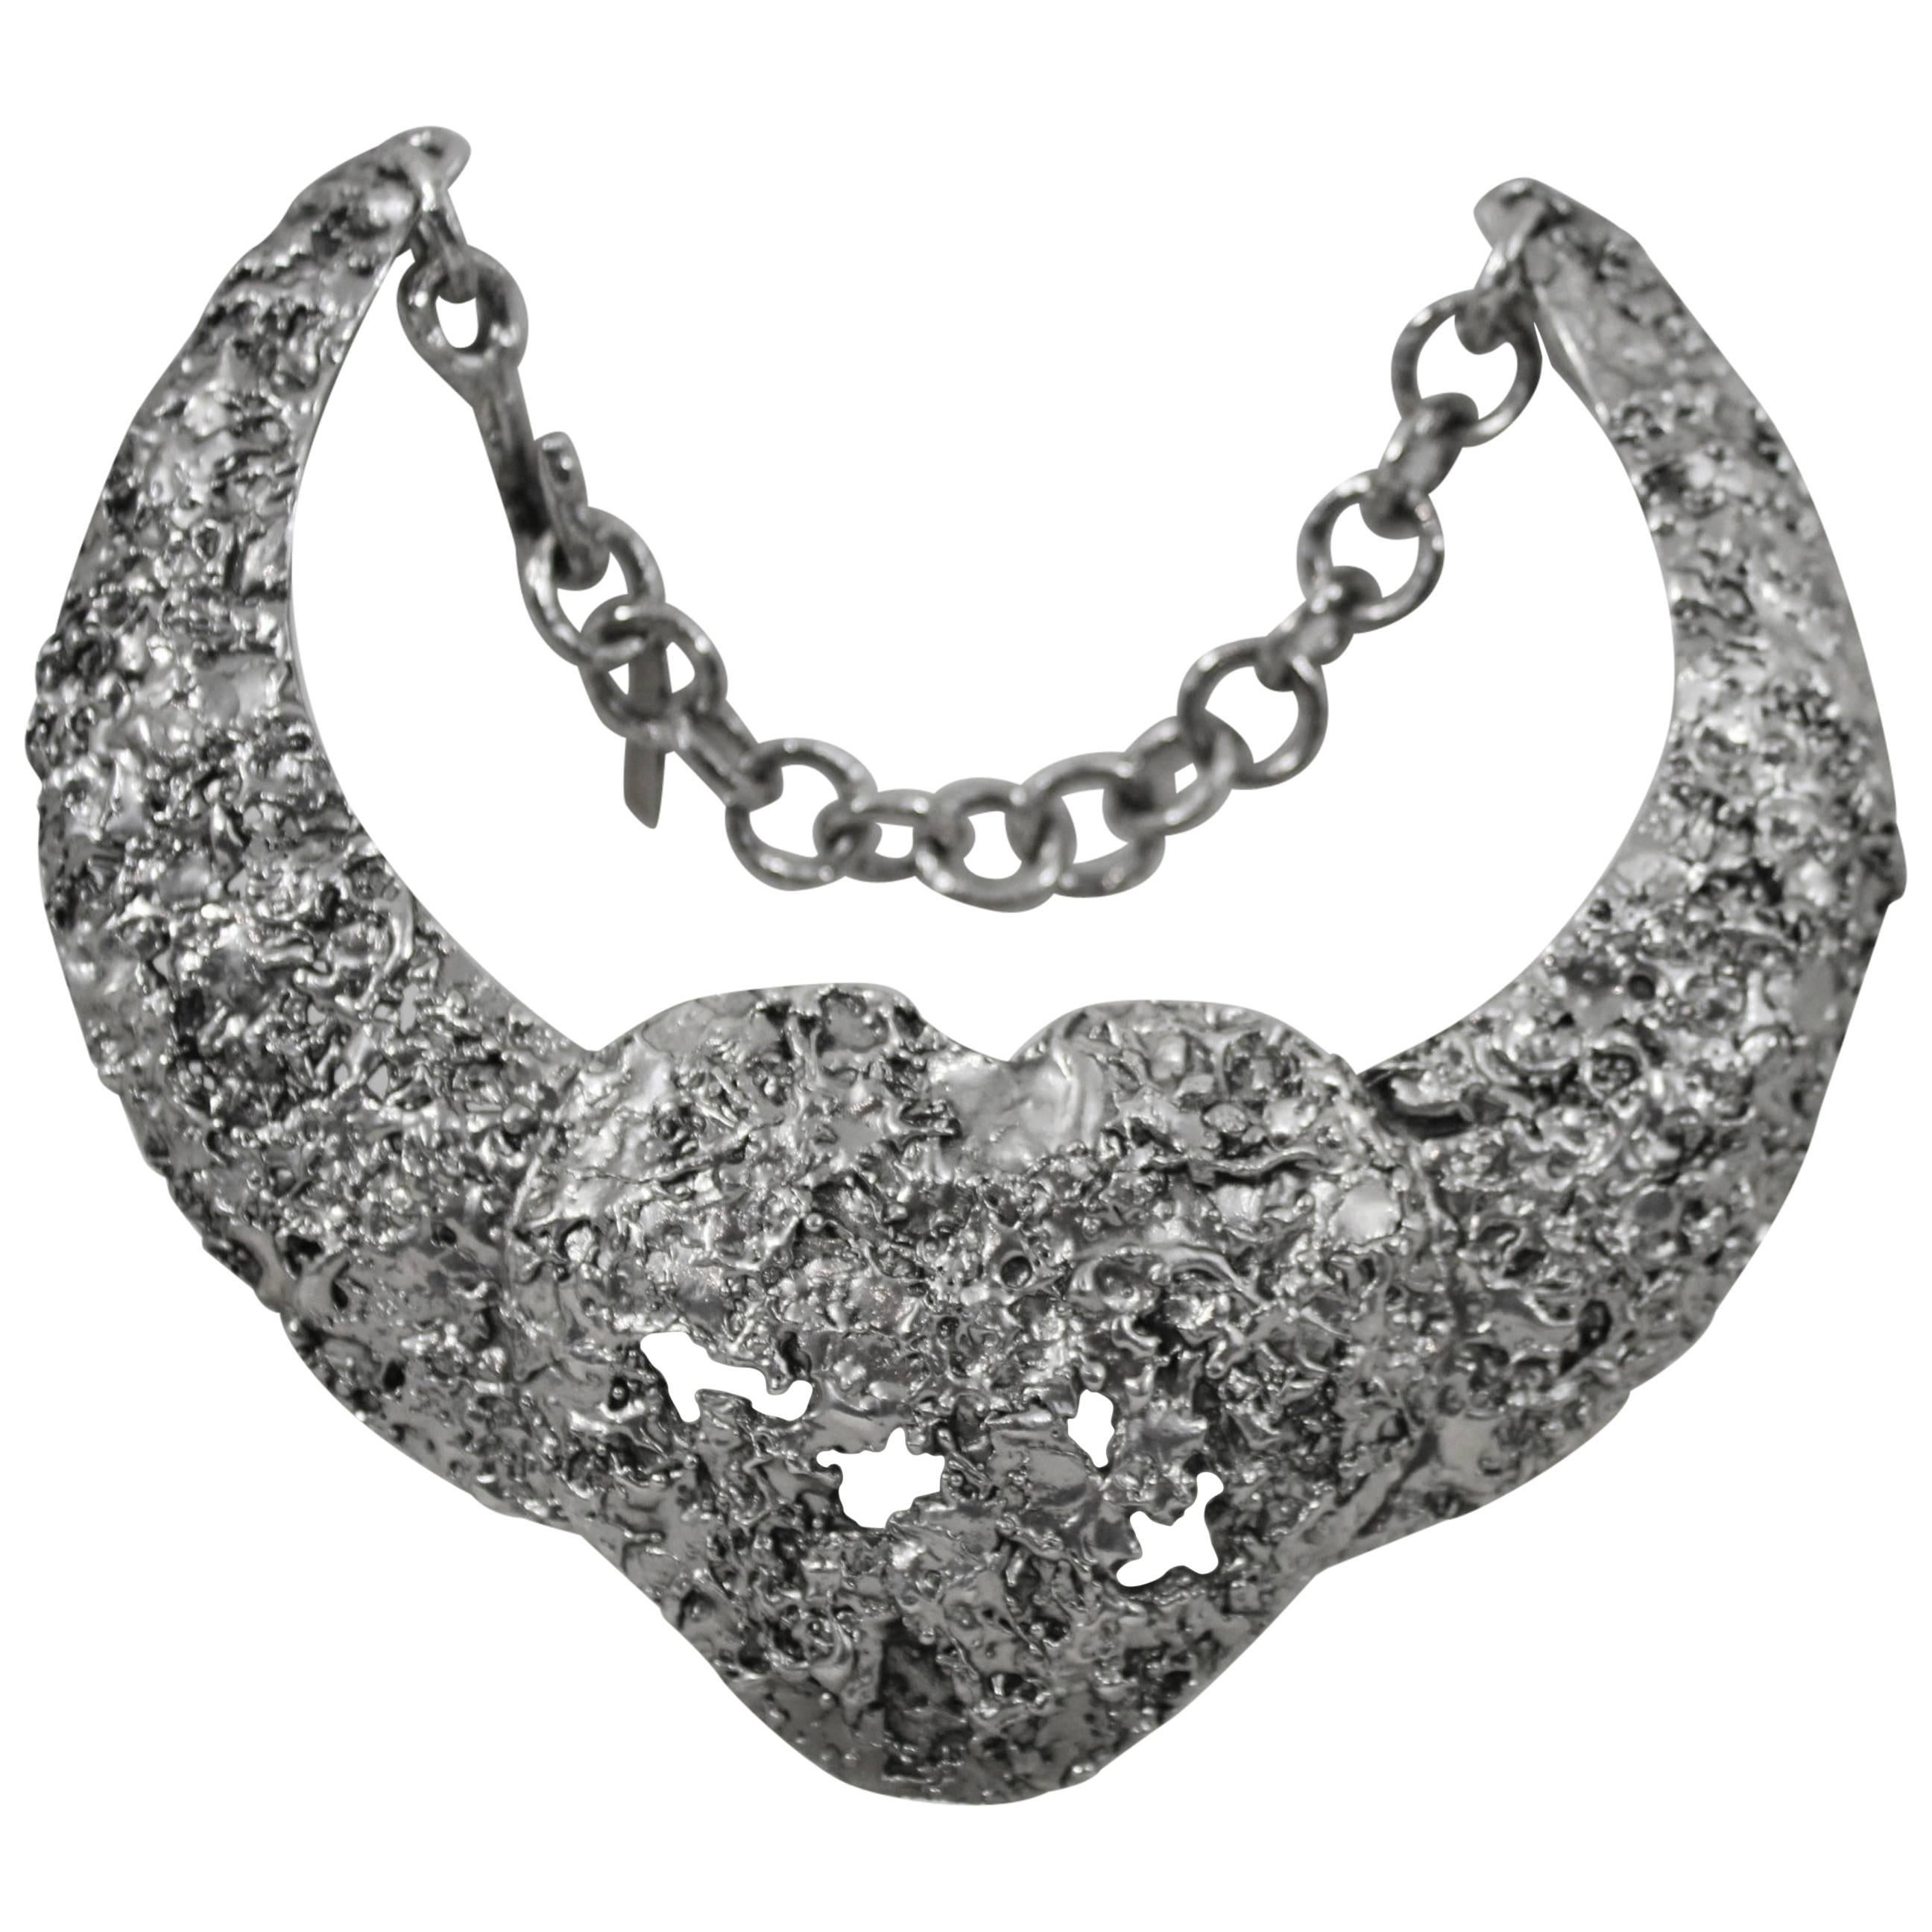 Amazing Yves saint Laurent par Stefano Pilati heart shape Necklace For Sale